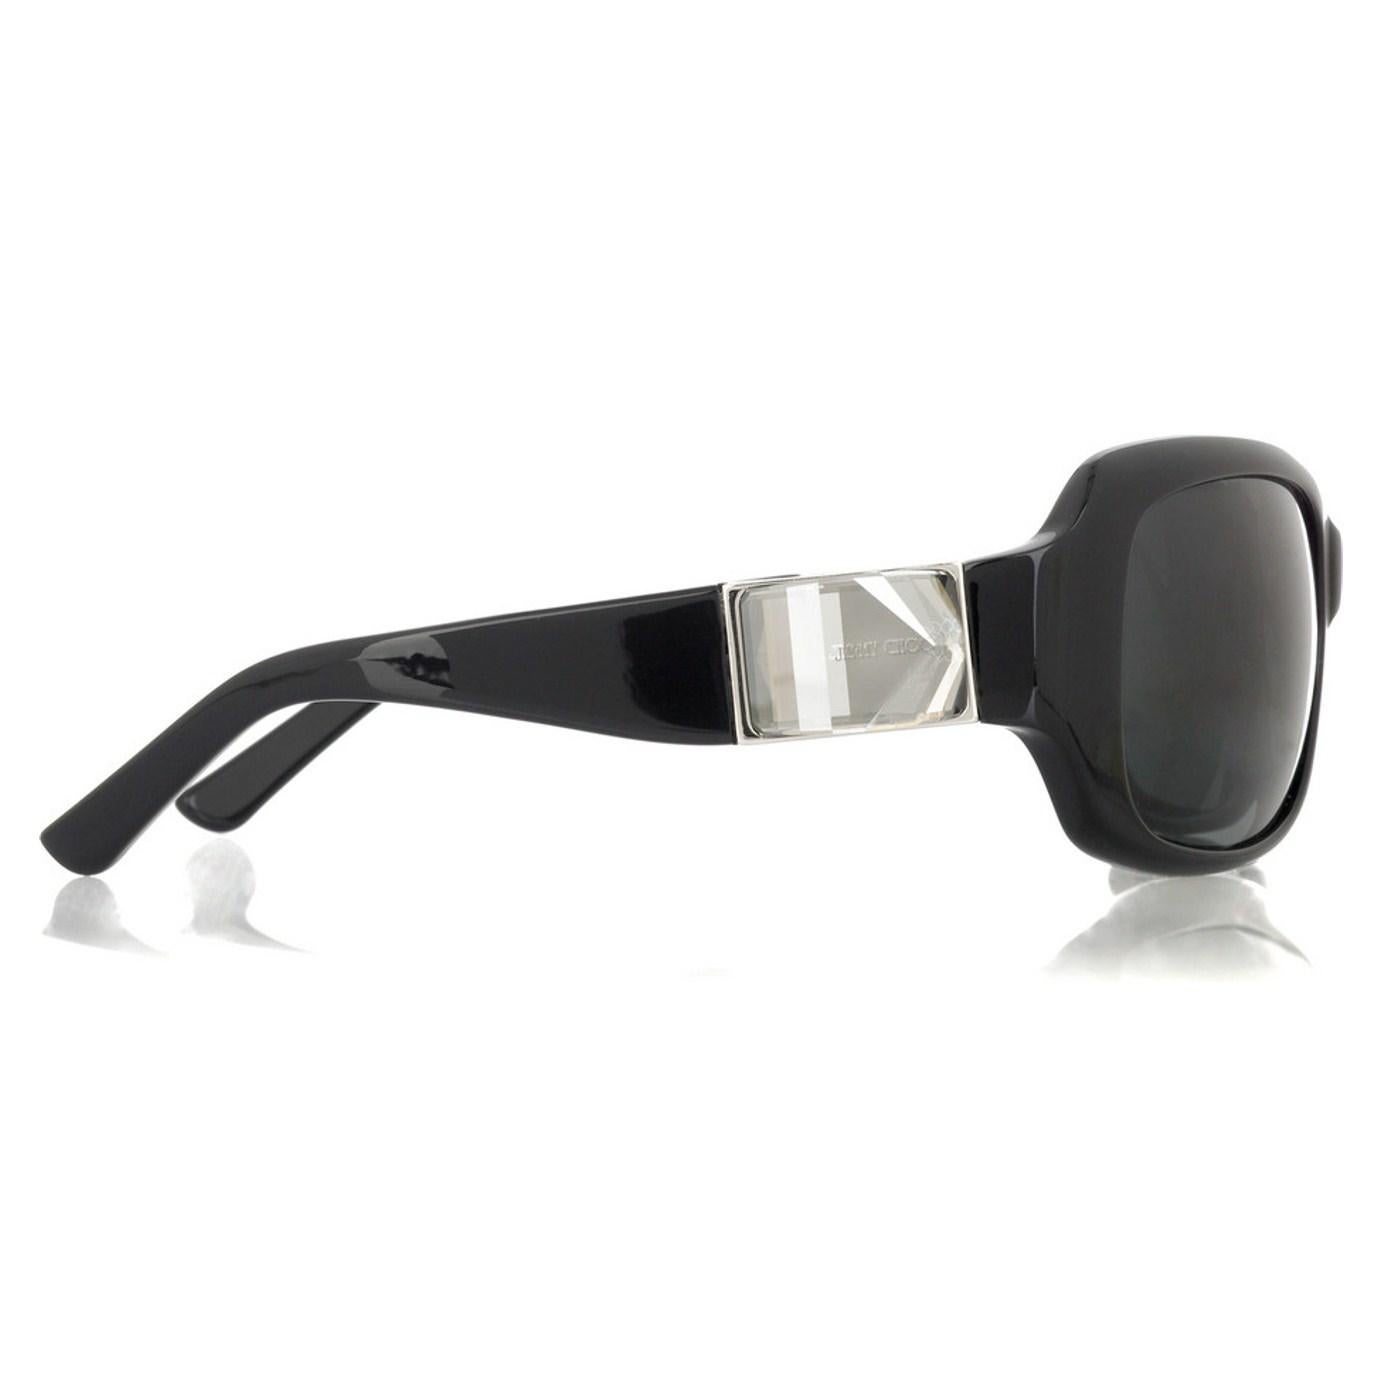 Neu Jimmy Choo Swarovski-Sonnenbrille mit Etui und Schachtel $595 1